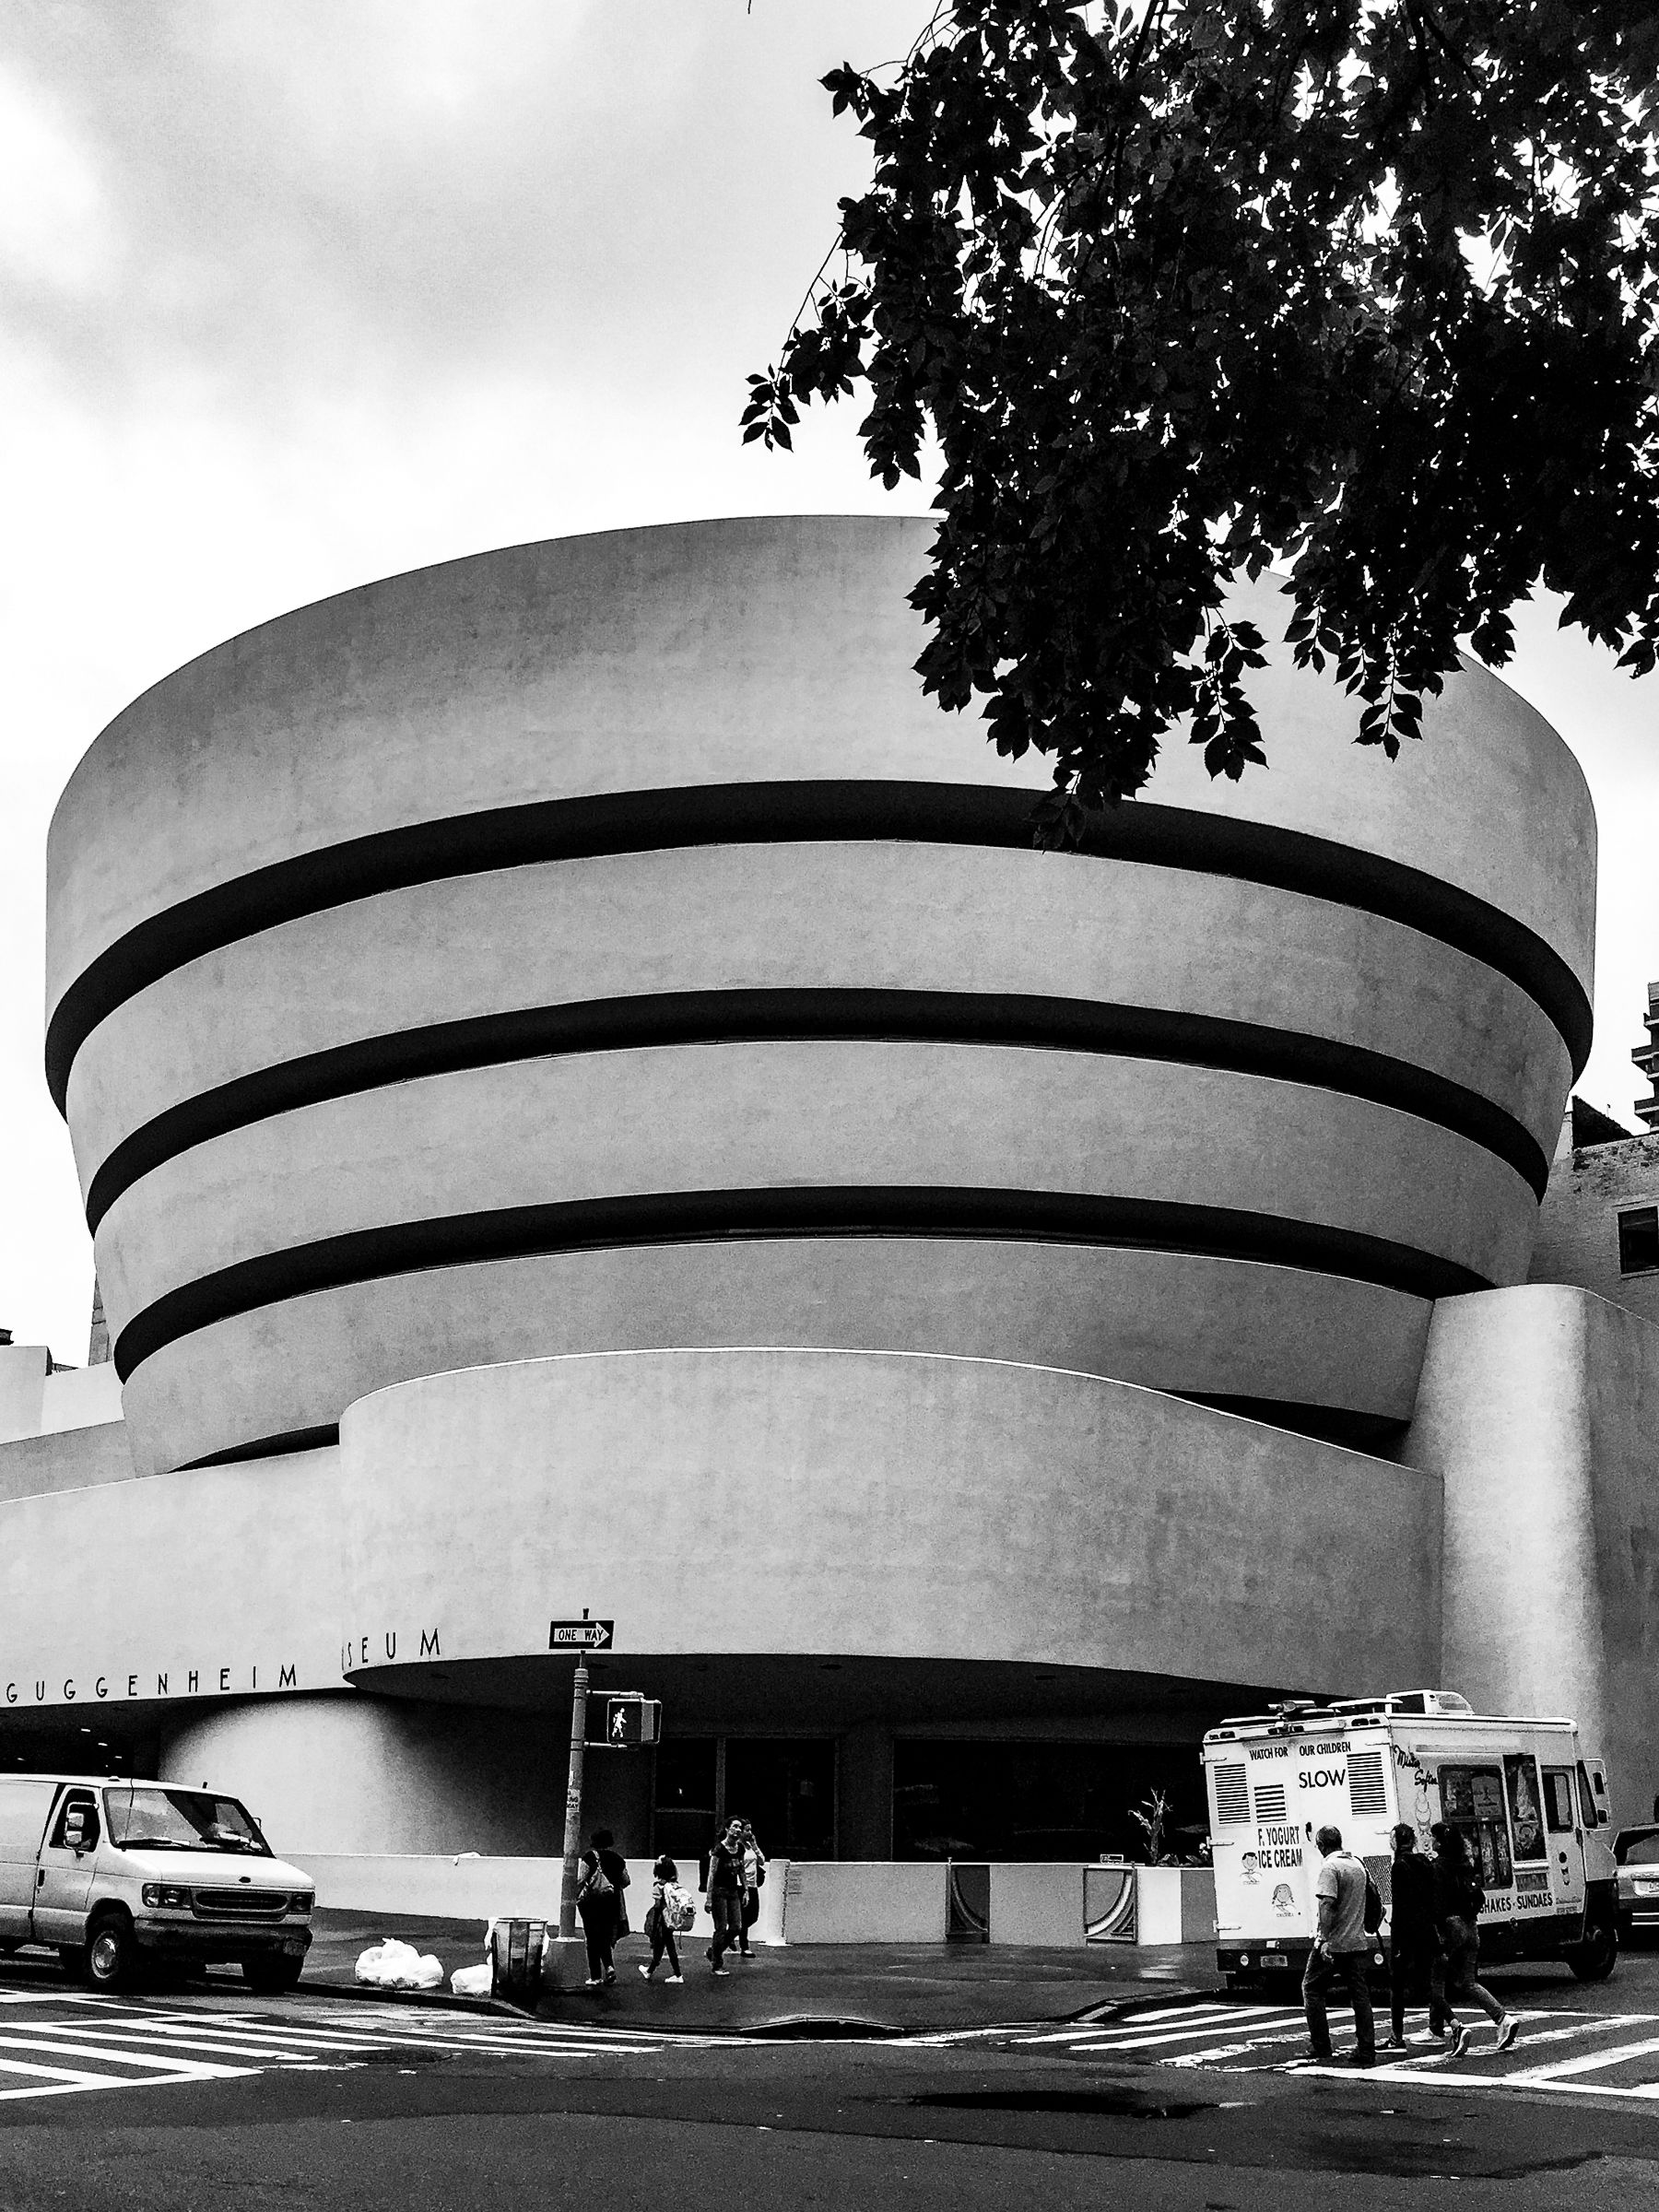 Guggenheim museum  New York...